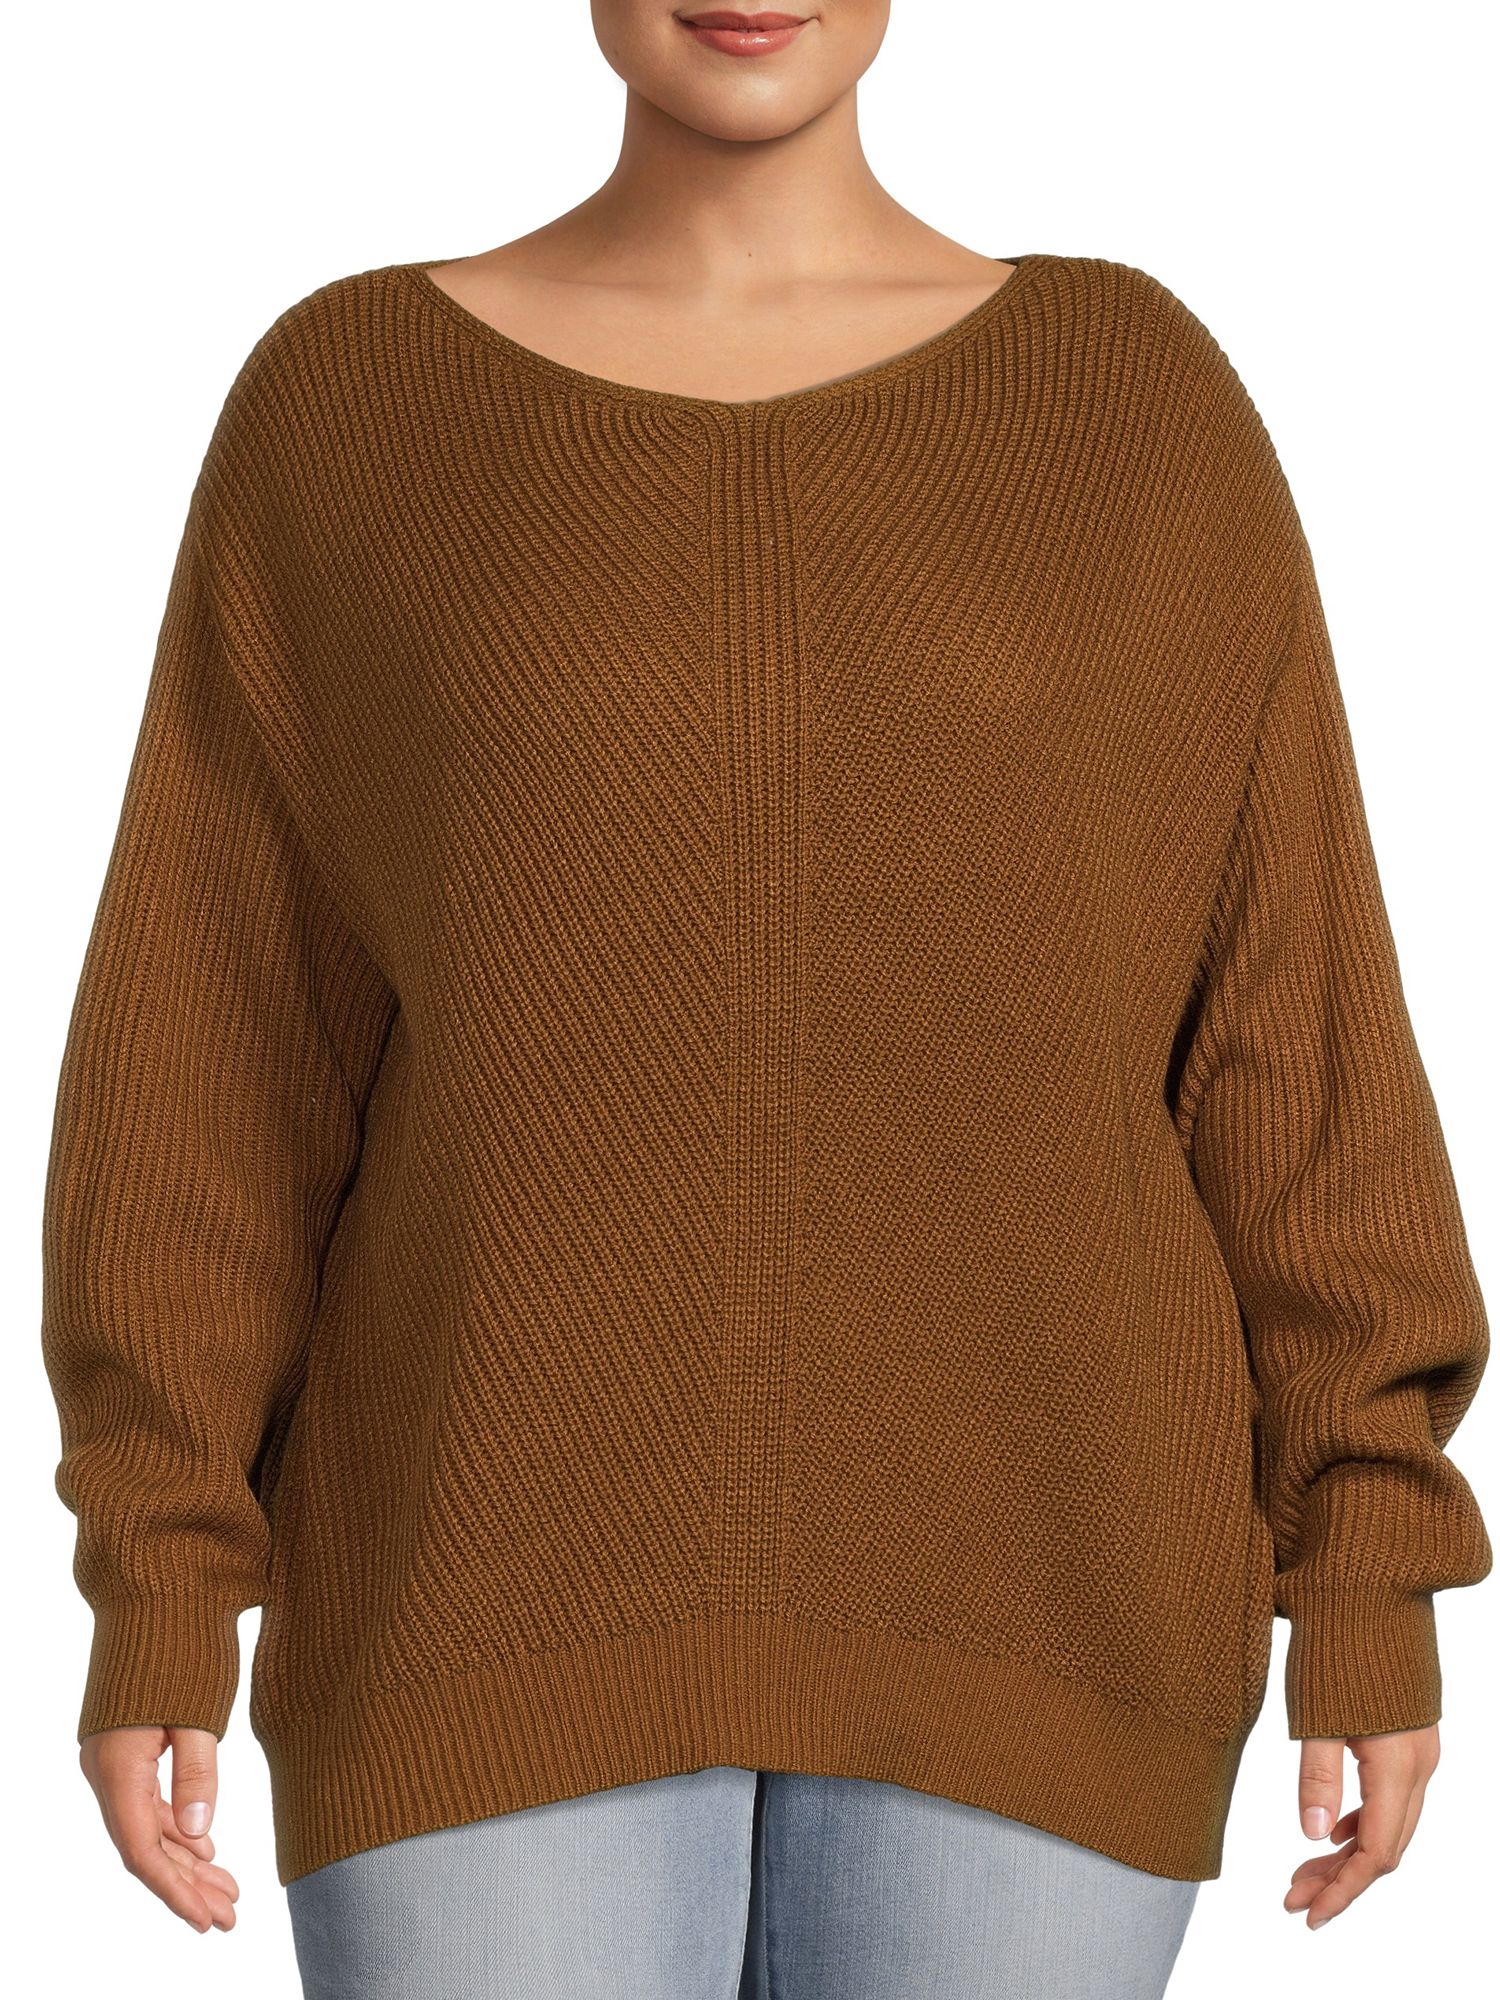 Terra & Sky Women's Plus Size Boatneck Sweater | Walmart (US)